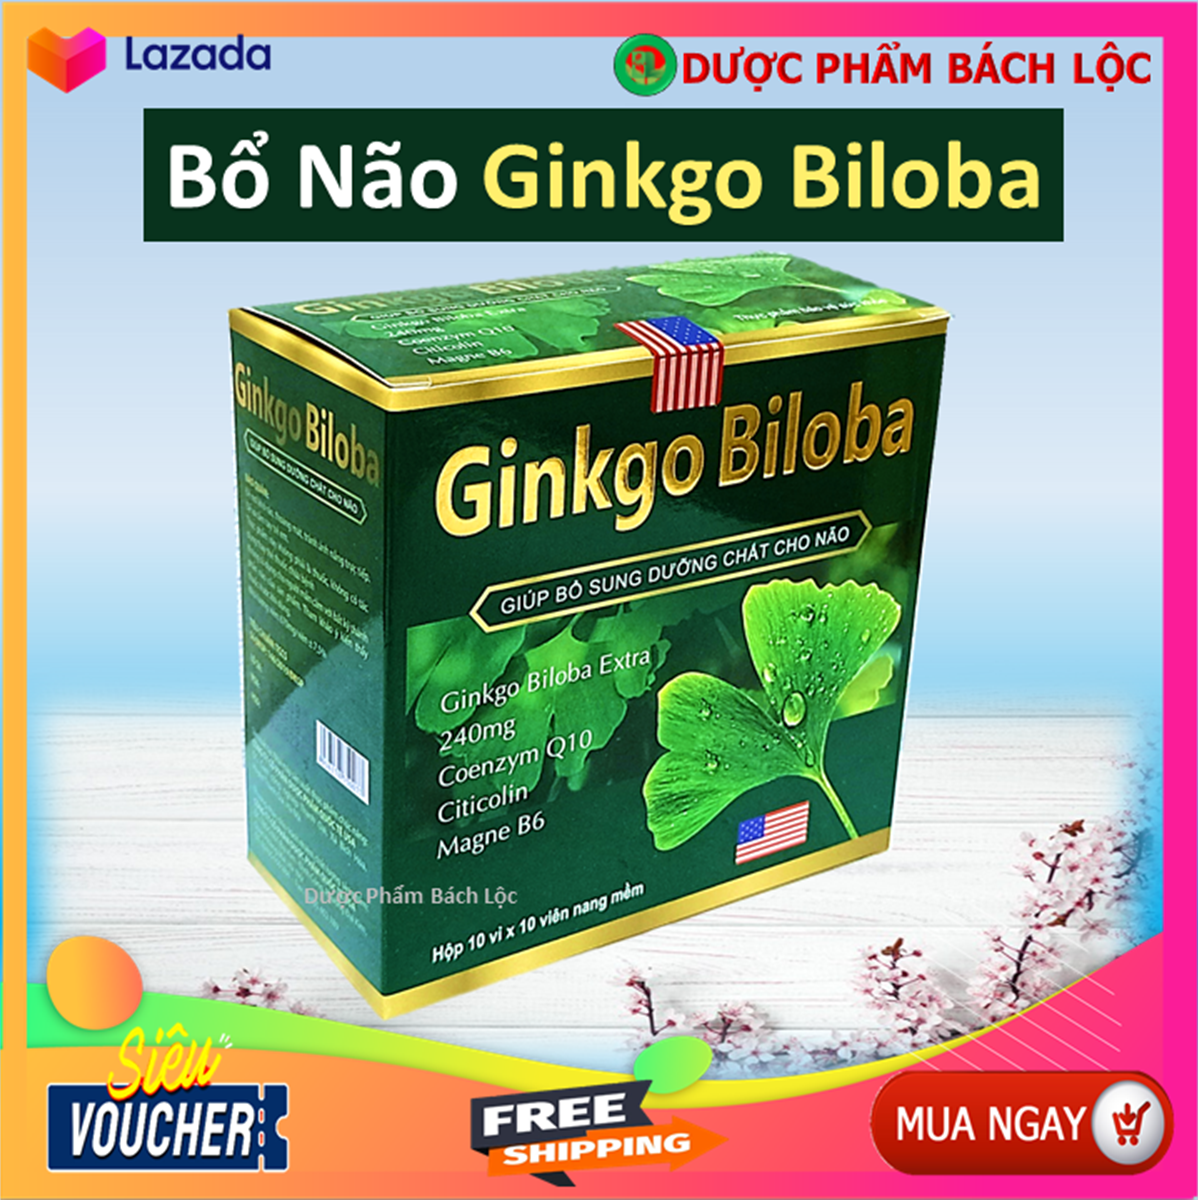 Hoạt huyết dưỡng não Ginkgo Biloba 240mg - Giúp tăng tuần hoàn máu